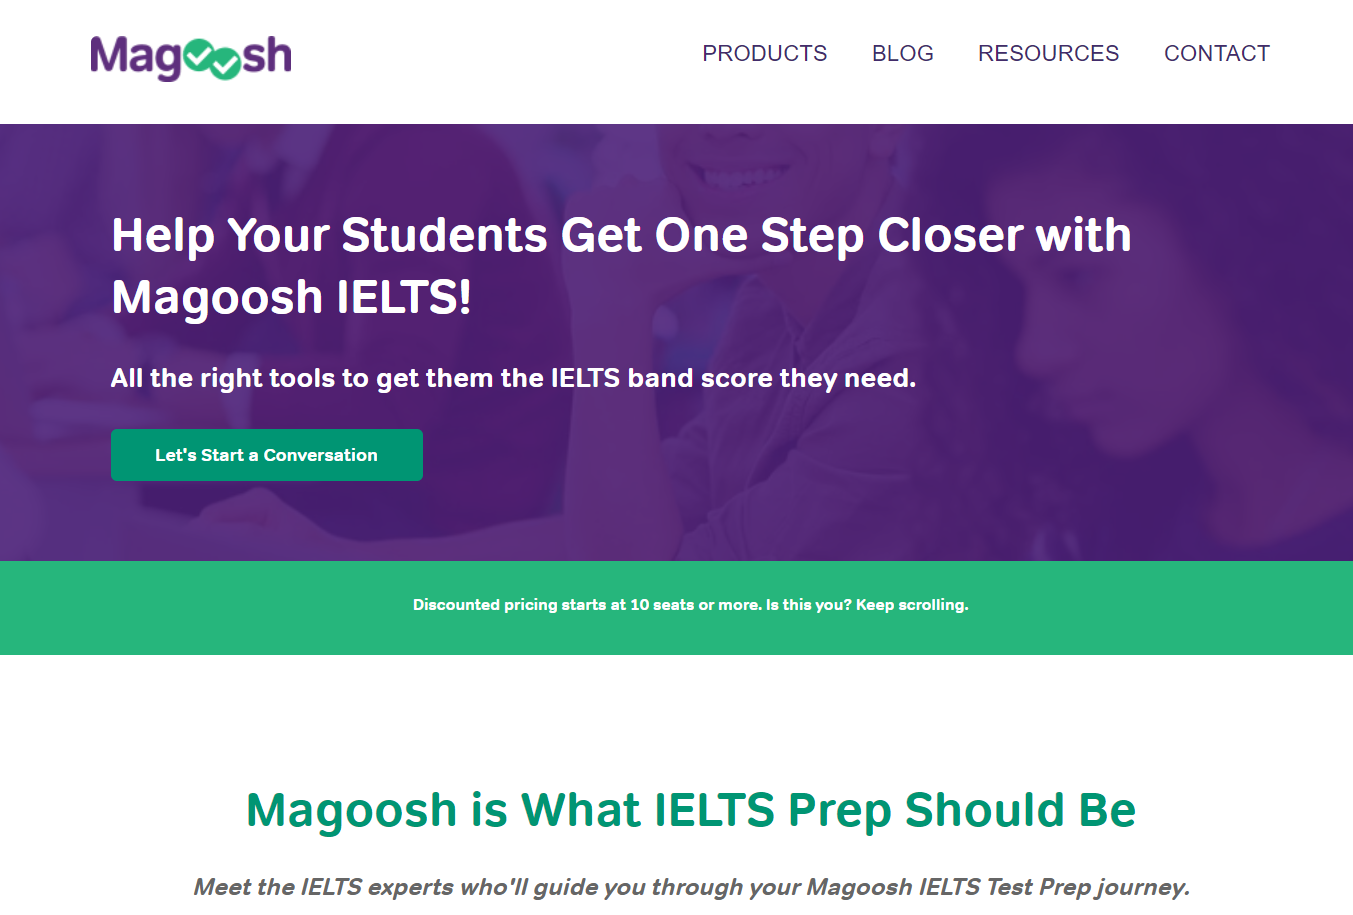 Magoosh IELTS Test Prep